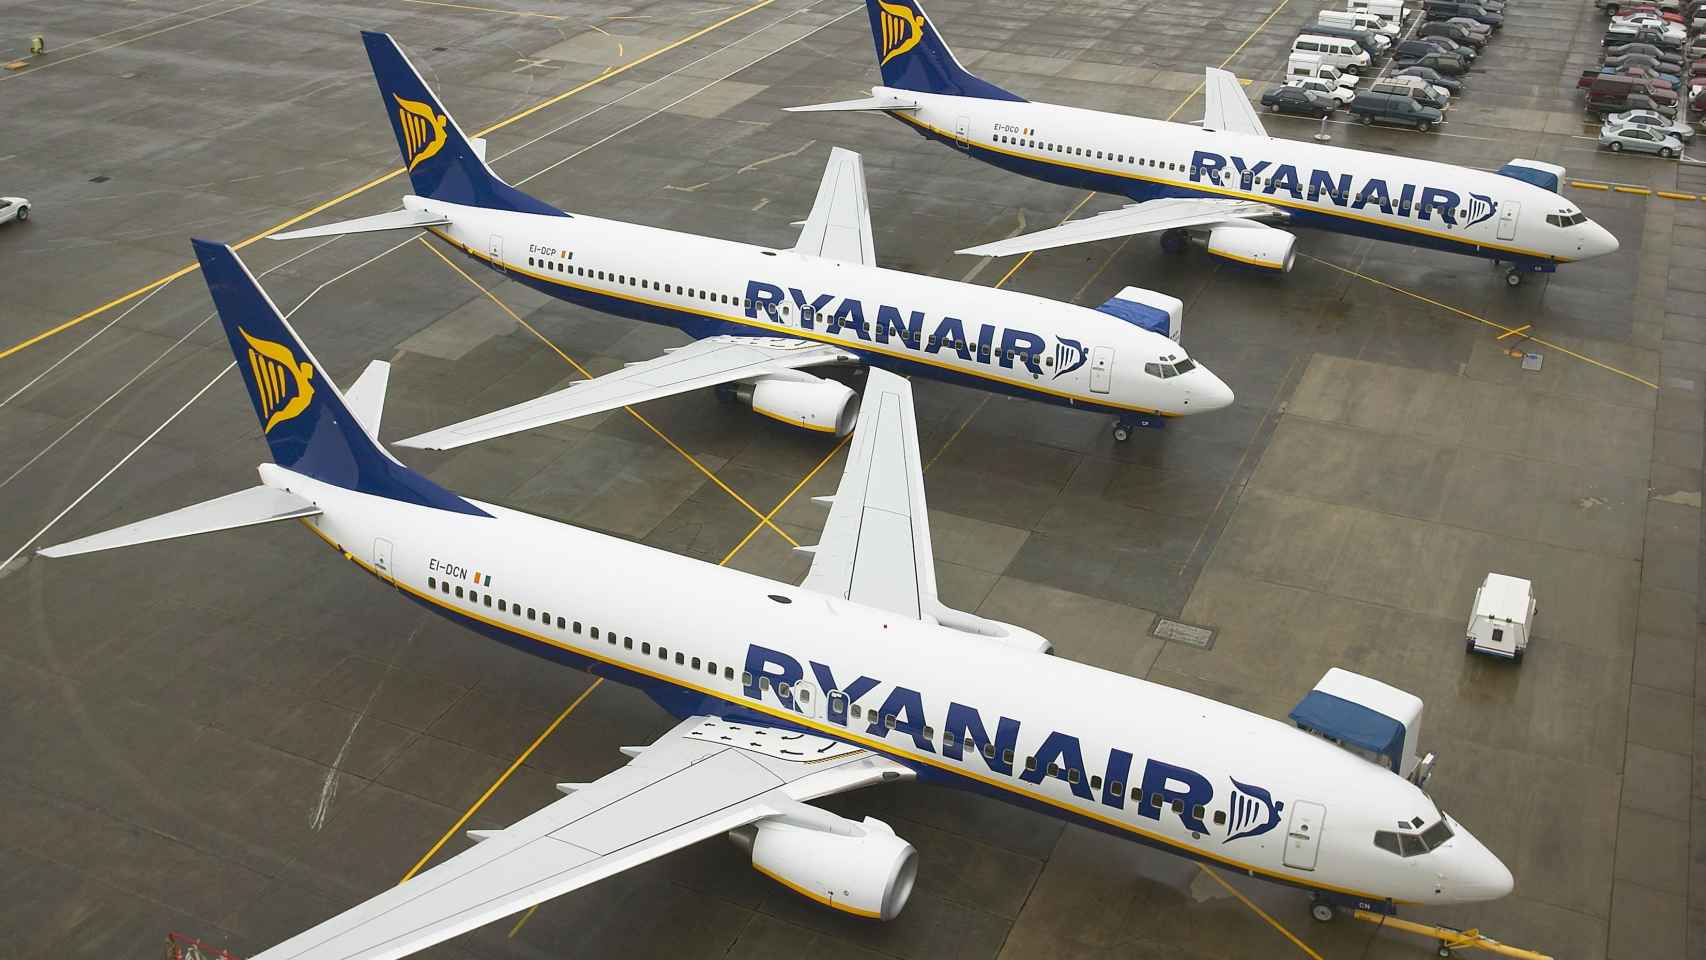 La aerolínea irlandesa Ryanair ha cancelado casi 300 vuelos desde o hacia Barcelona / RYANAIR